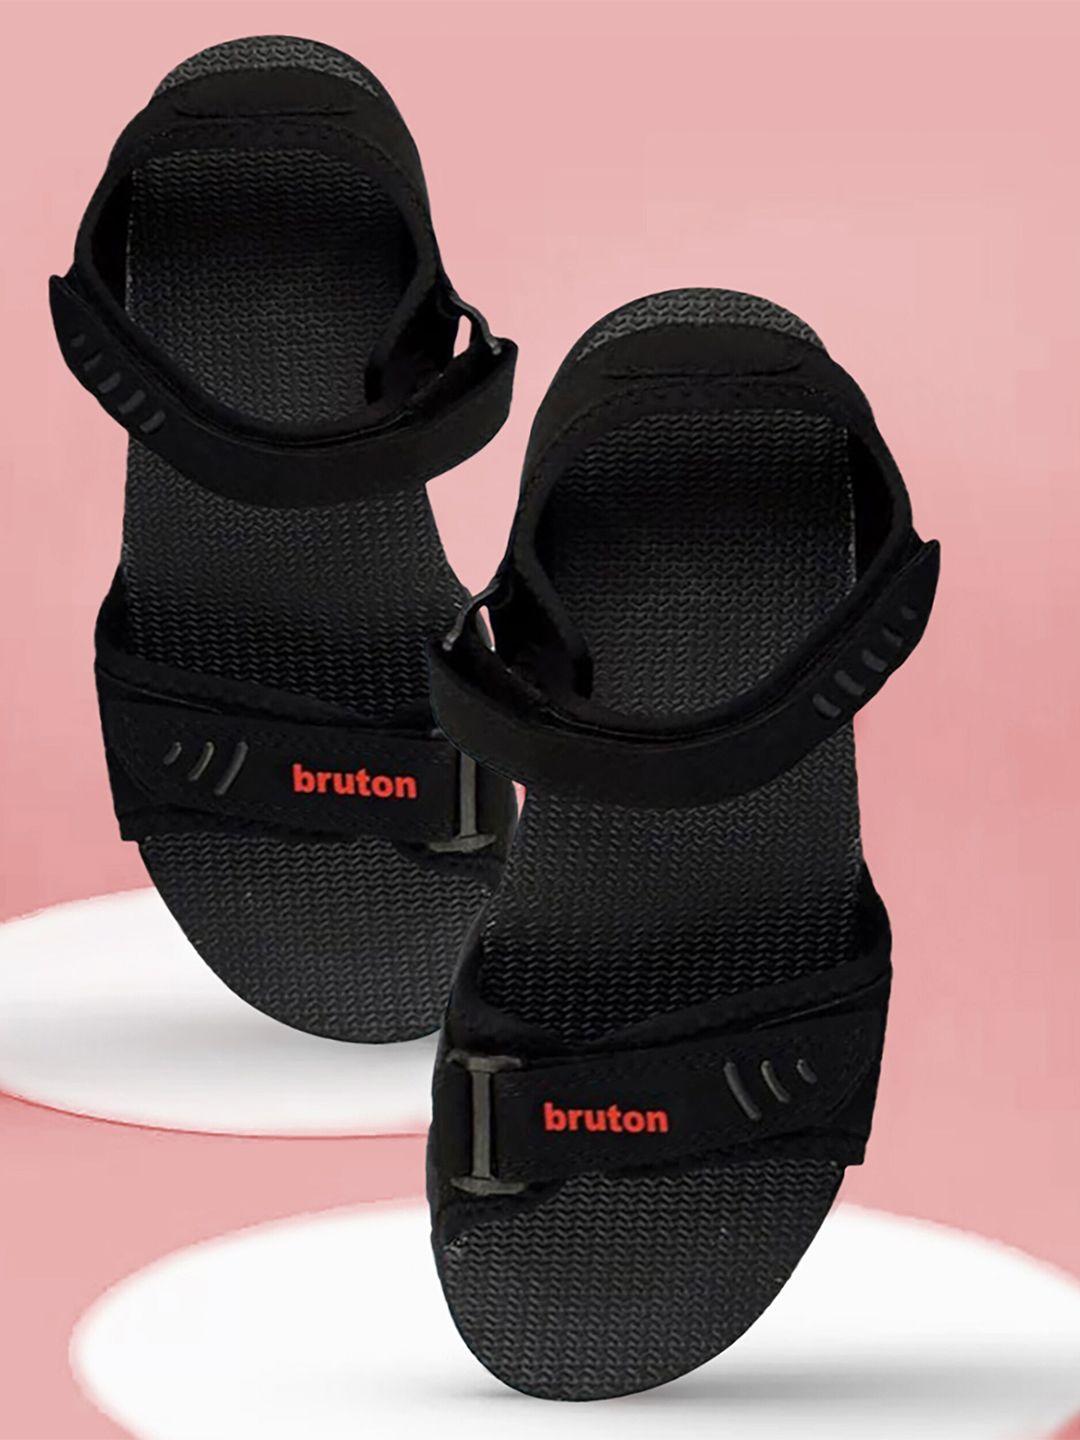 bruton-men-sports-sandals